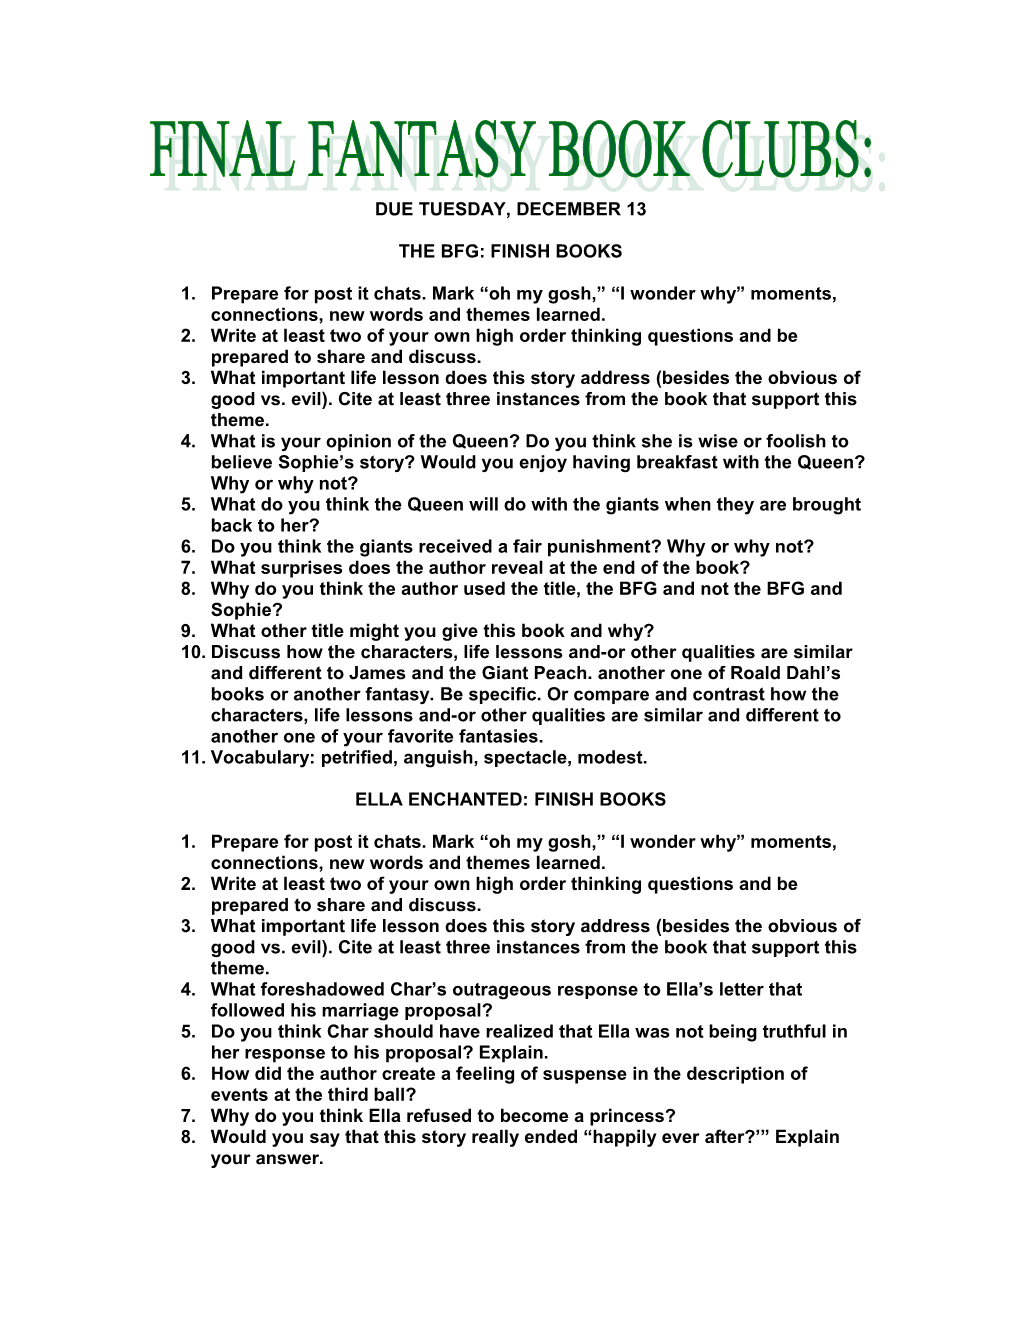 The Bfg: Finish Books